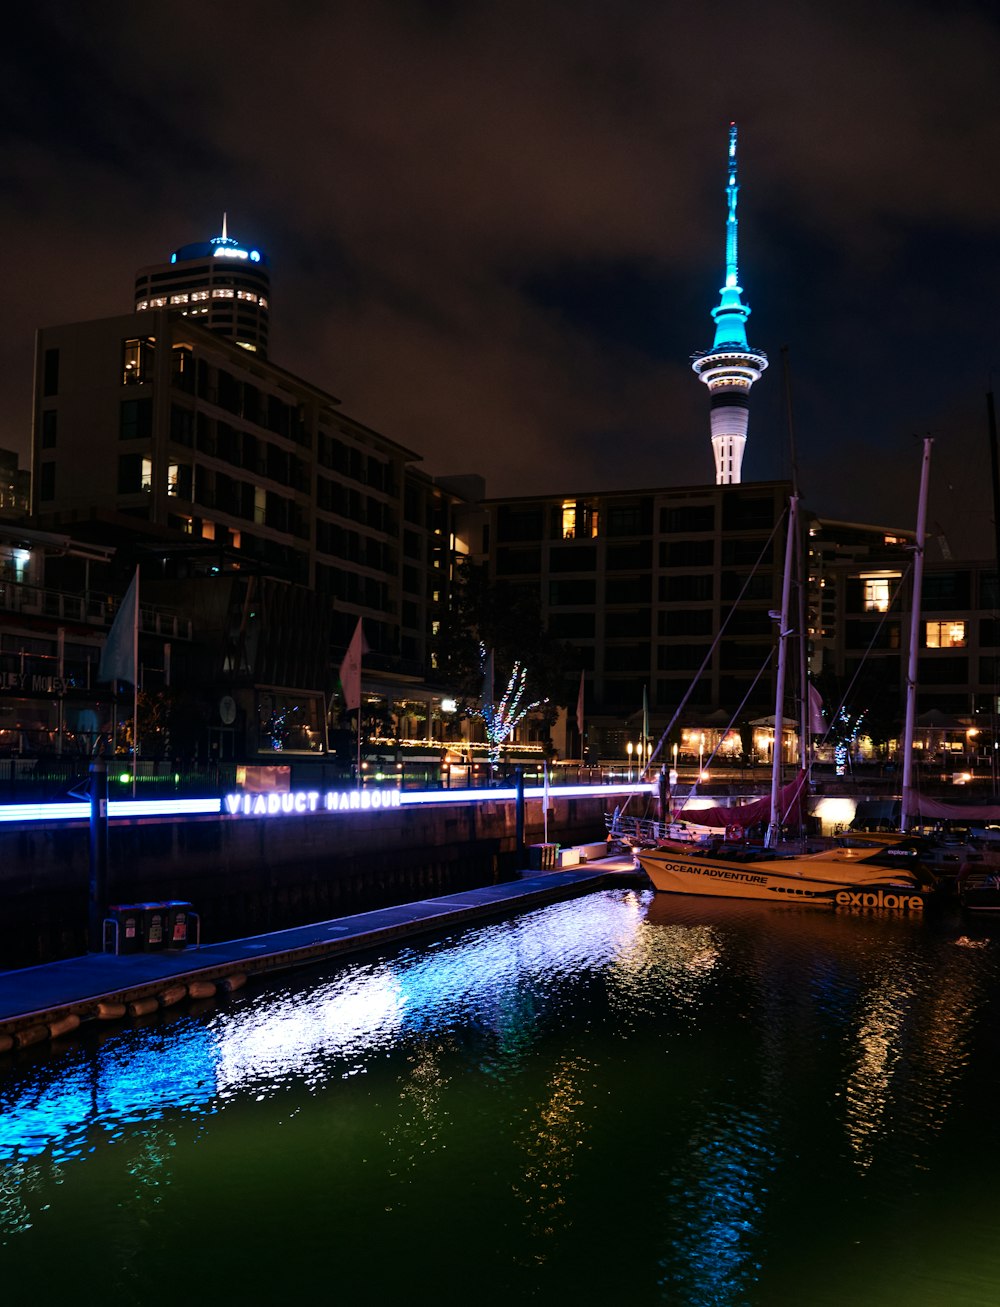 Eine Nachtszene eines Hafens mit Booten und einem Turm im Hintergrund